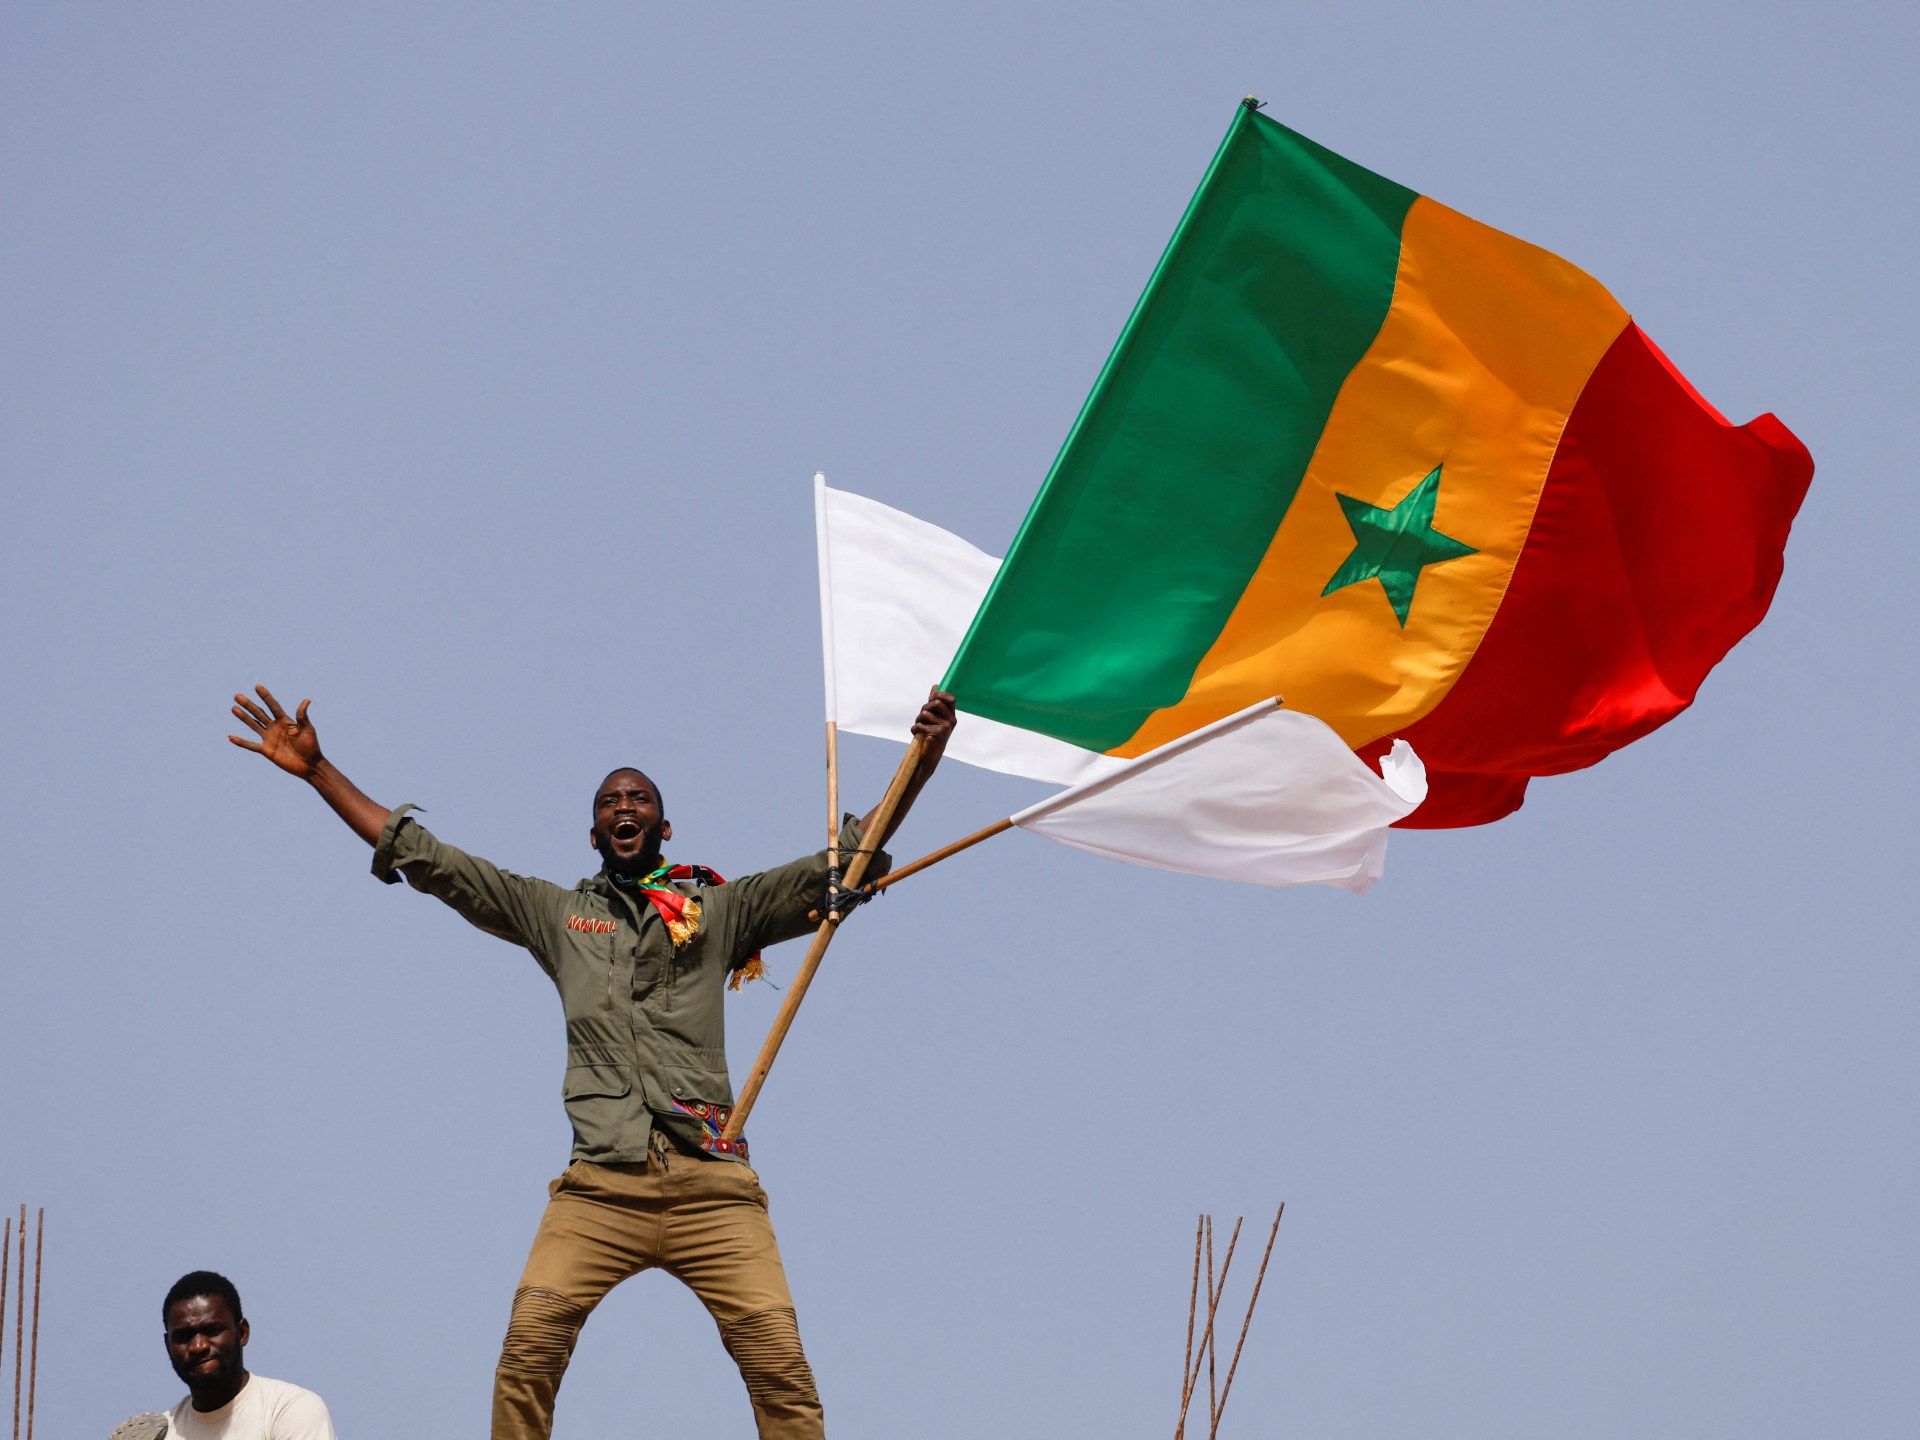 Satu tewas, 30 terluka dalam gelombang kerusuhan baru di Senegal |  Berita Protes